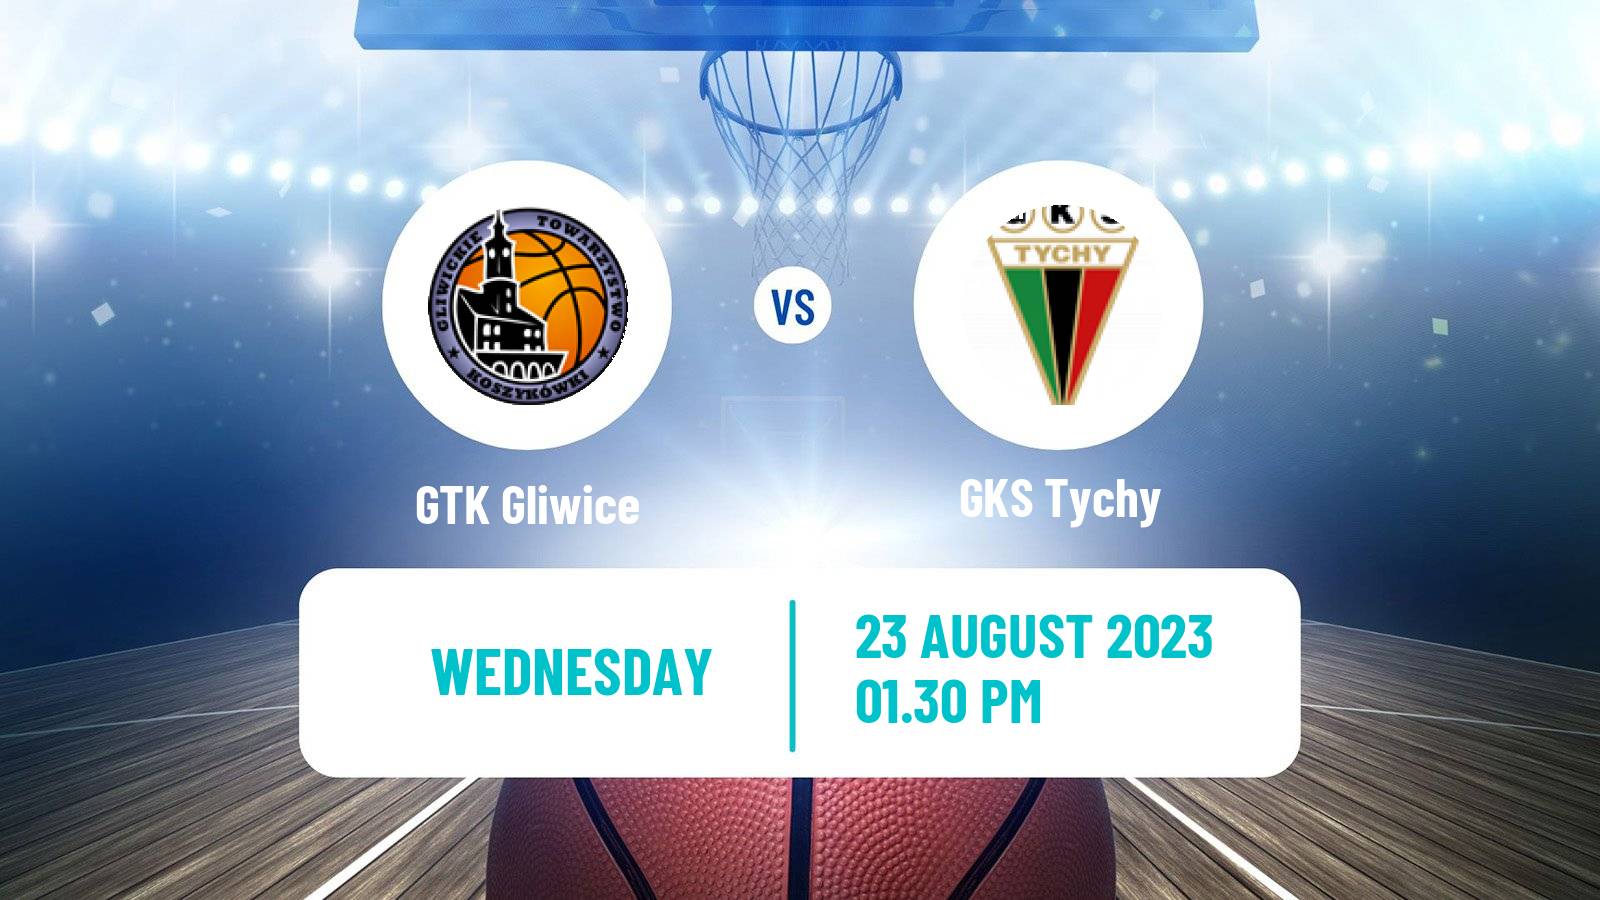 Basketball Club Friendly Basketball GTK Gliwice - GKS Tychy